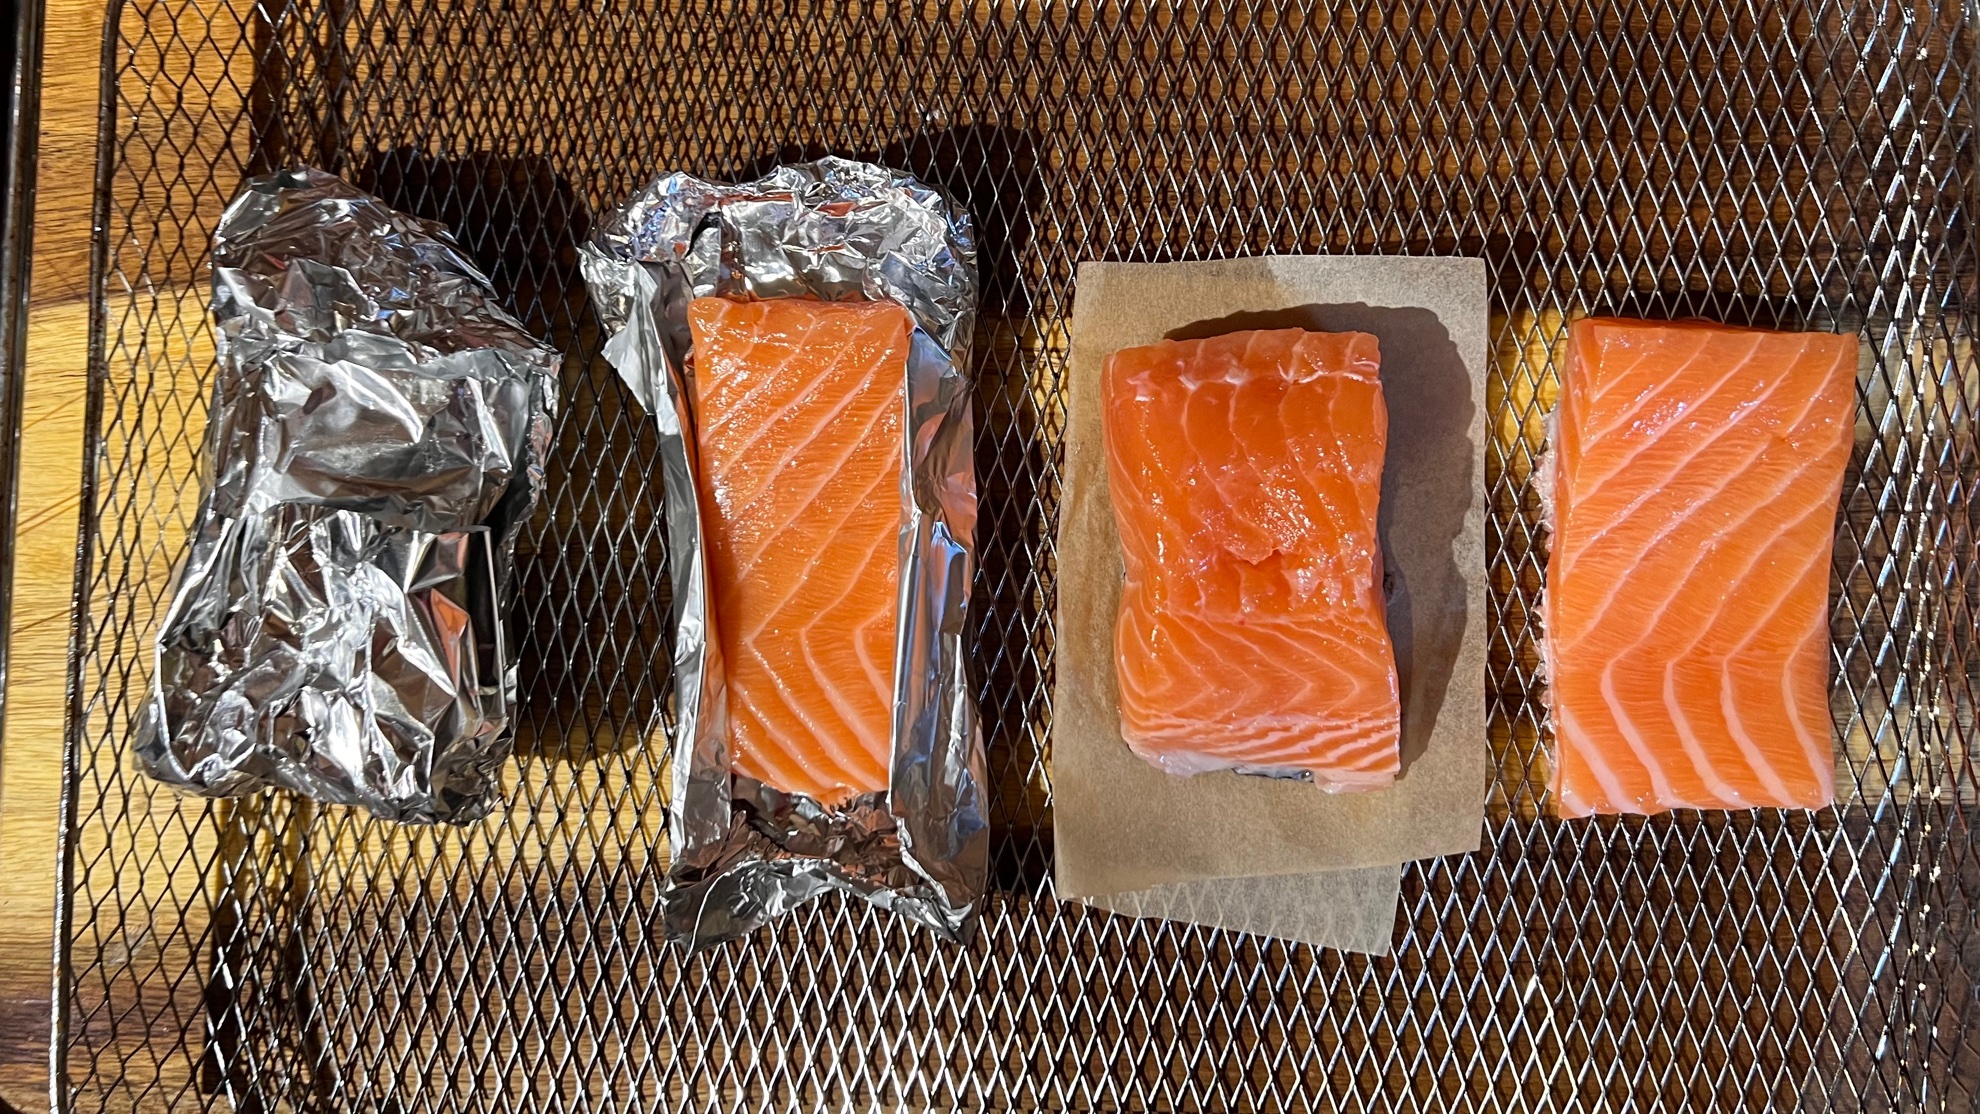 Preparing salmon for air frying